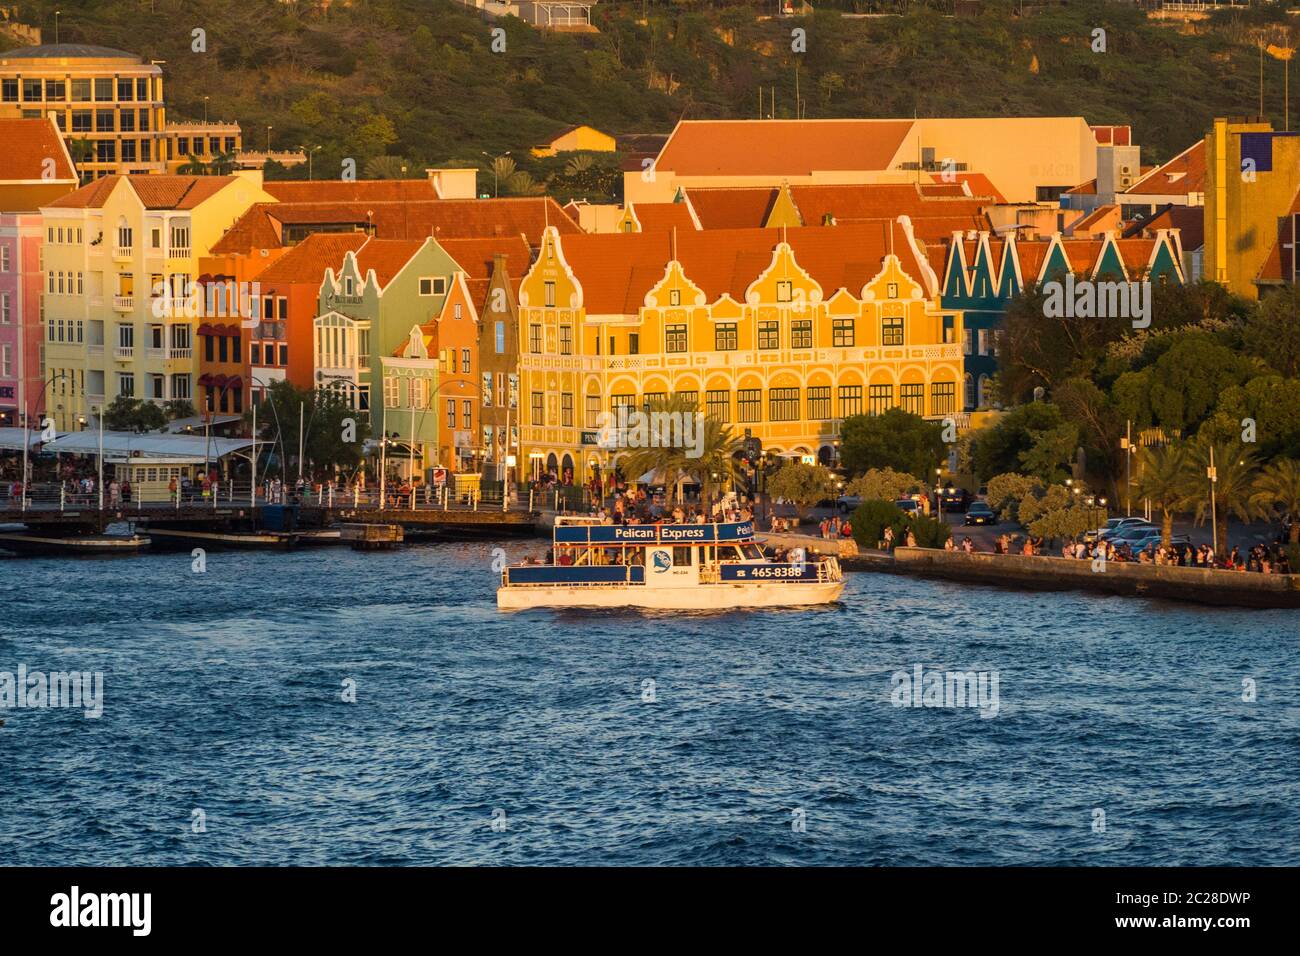 Mer des Caraïbes - Curaçao, Willemstad sur les îles ABC Banque D'Images